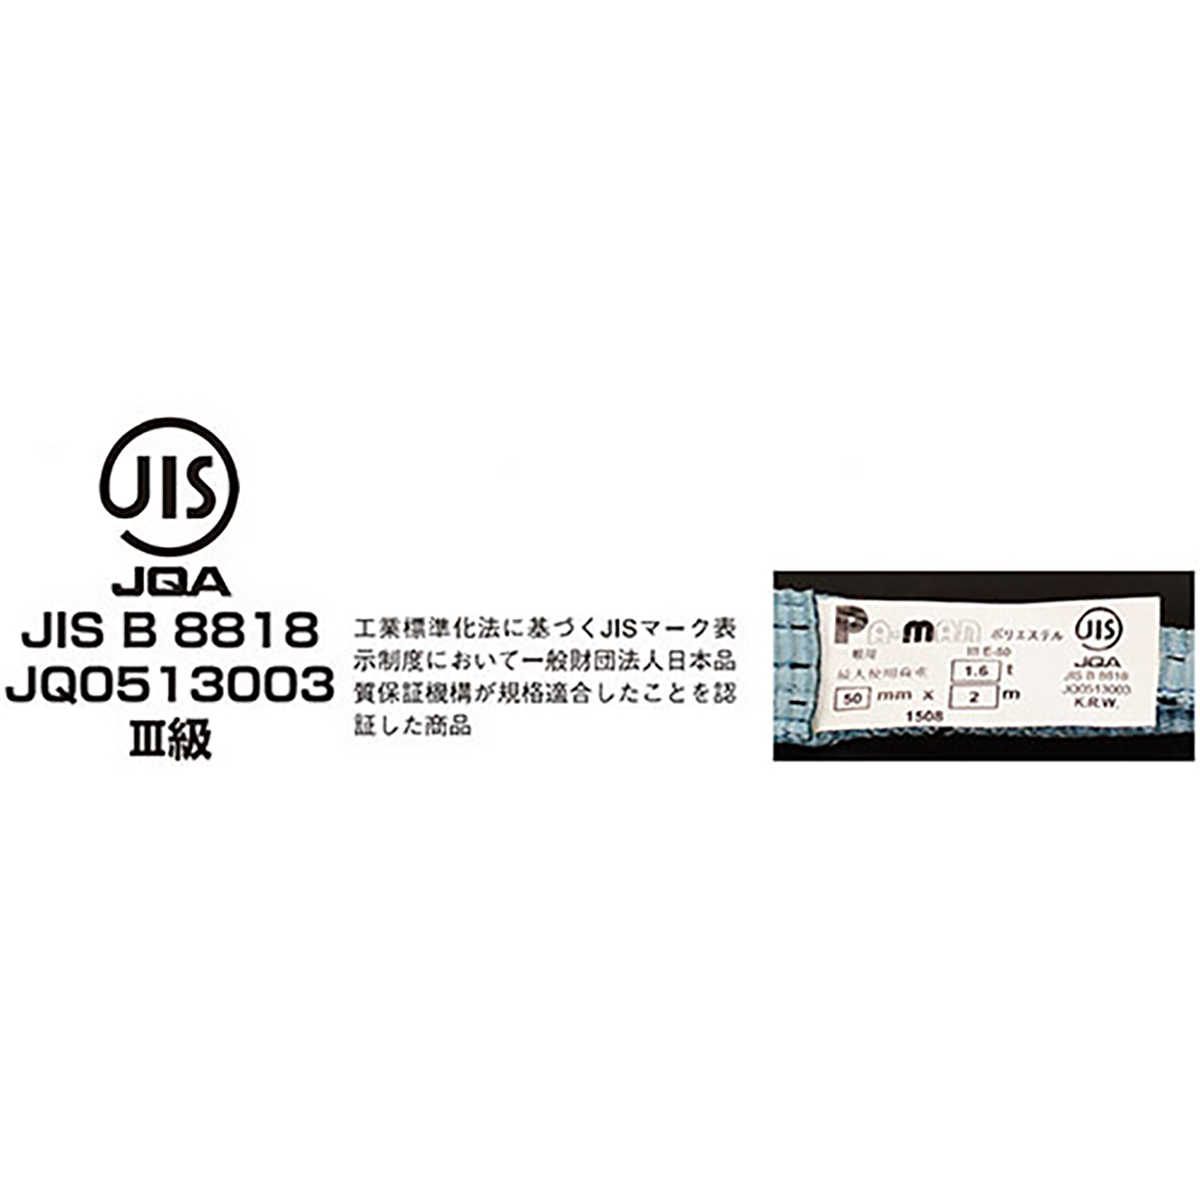 ポリベルトスリング JIS III級 ソフト面付 巾35mm 4m 1本